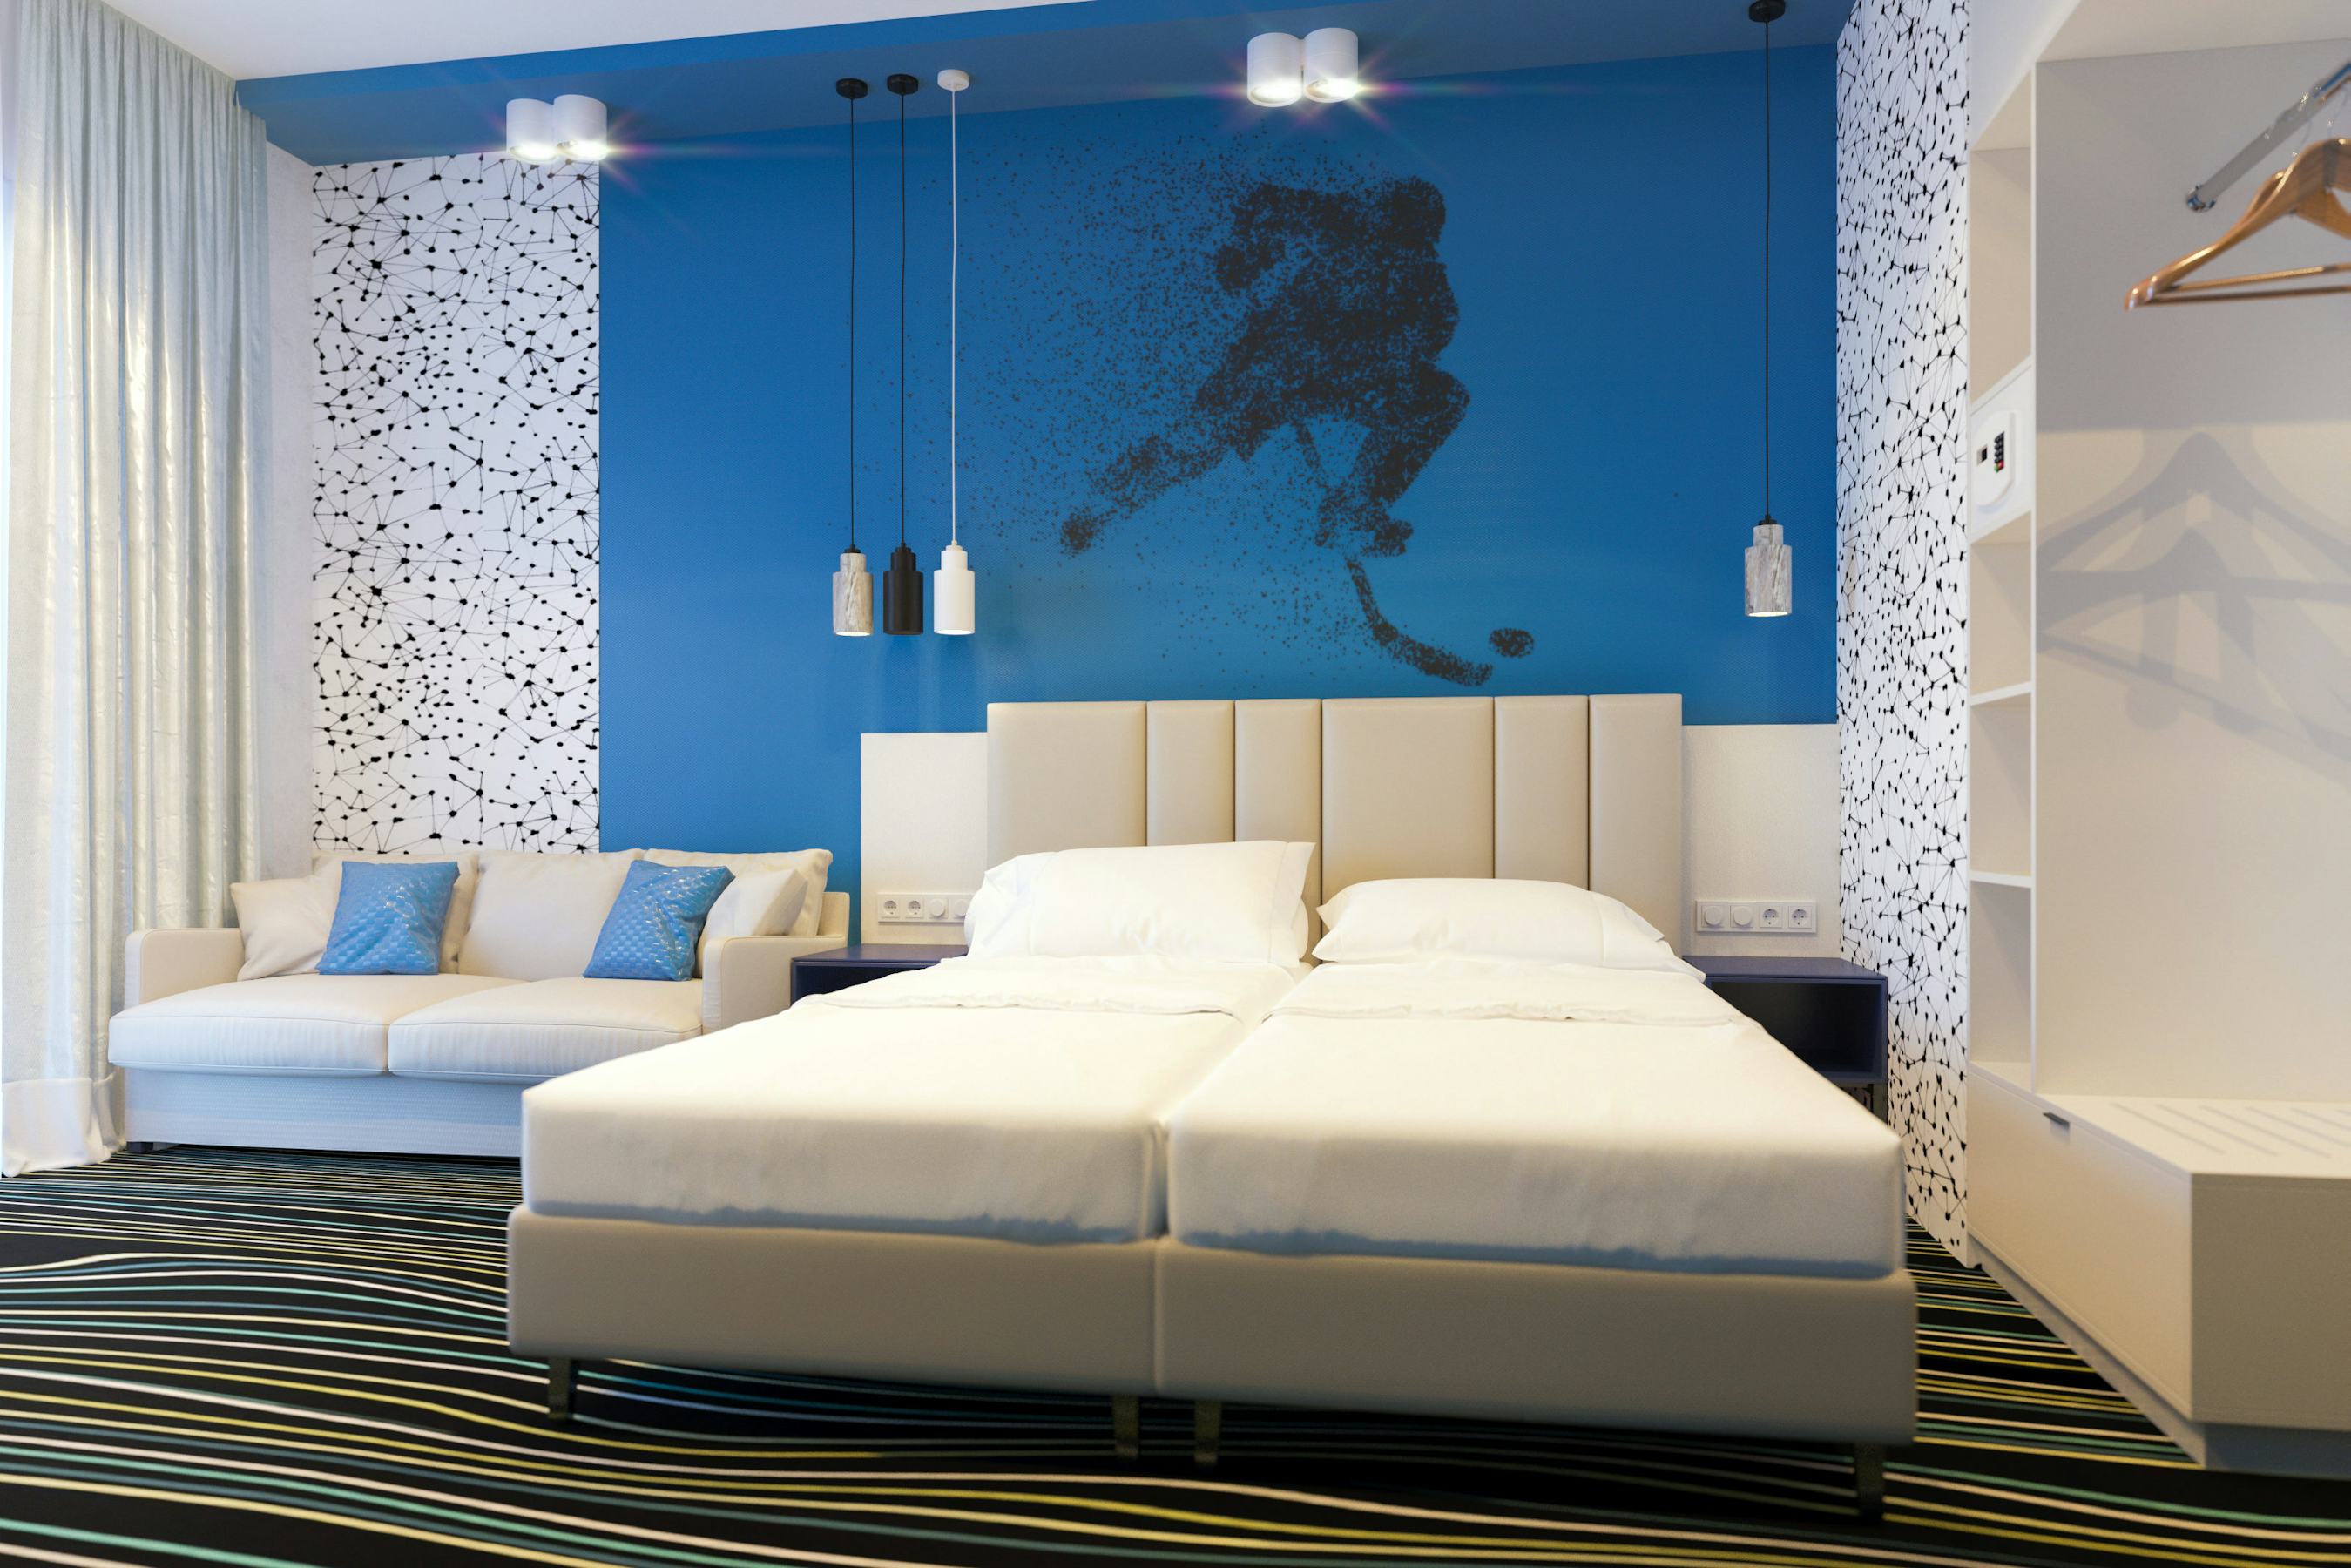 Hotelbedding: een goed bed zorgt voor goede recensies